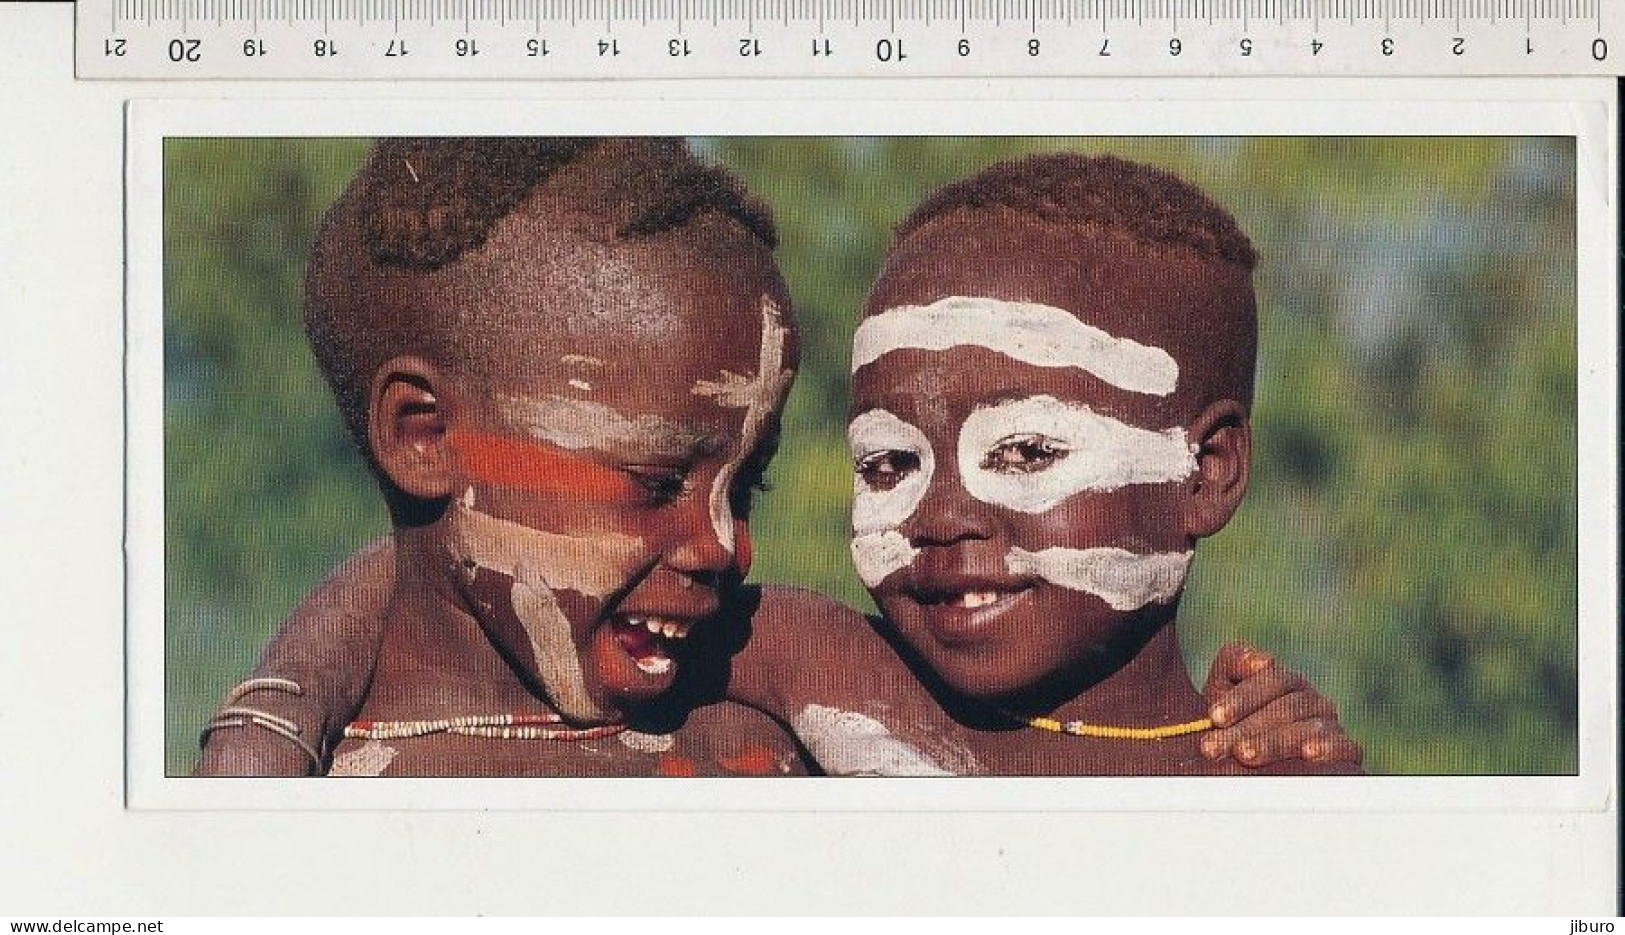 Carte Double Souple " Agir Ici " Format 21x10 Cm Les Meilleurs Amis Ethiopie Enfants ( Fisher Beckwith Estall ) - Äthiopien